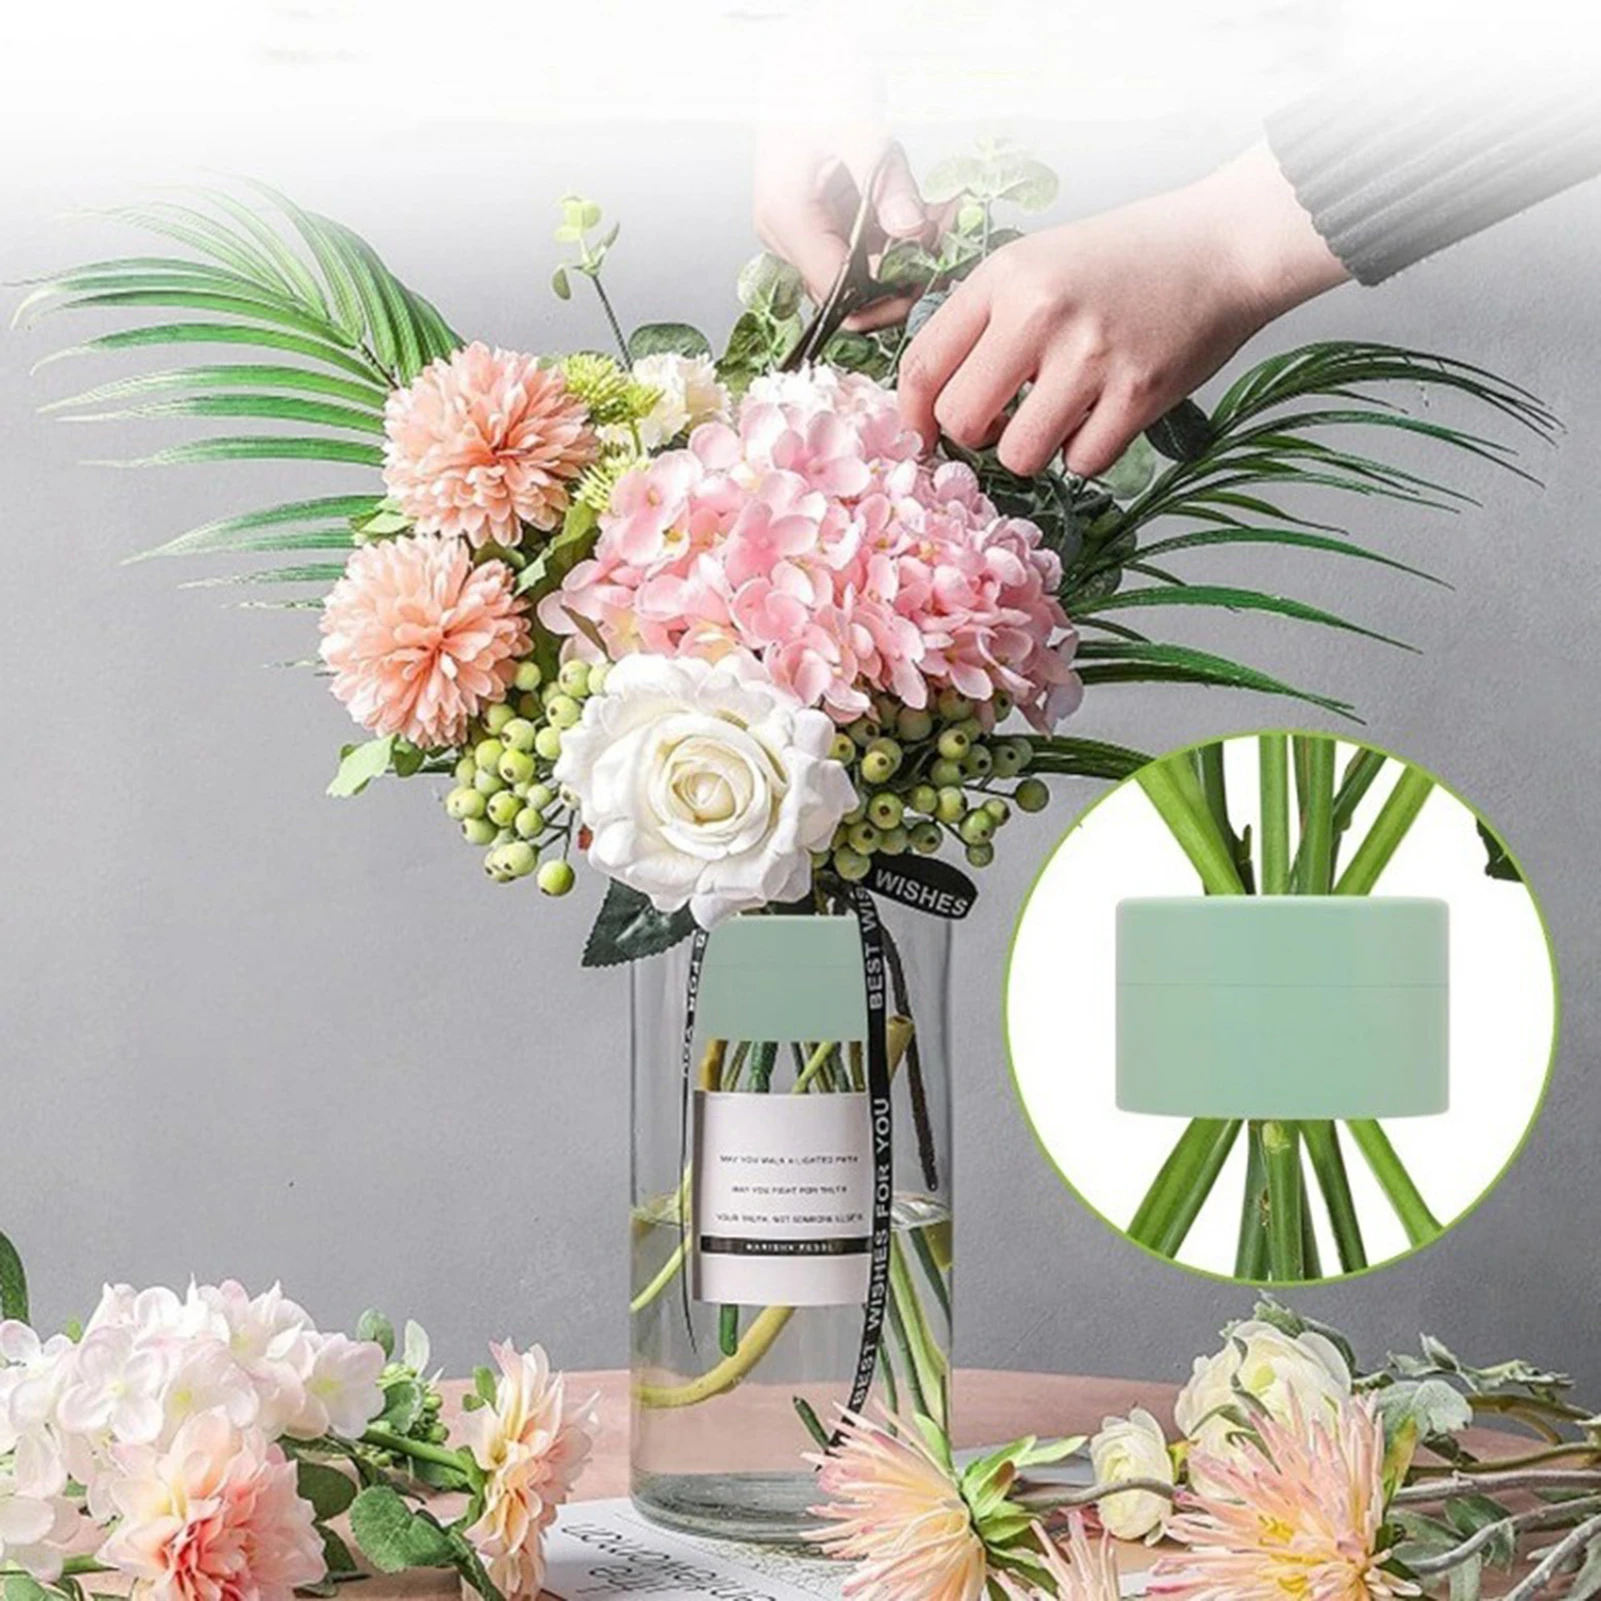 

Rotatable Spirals Flower Vase Stem Holder Sturdy Floral Art Arranging Holder For Wedding Decoration